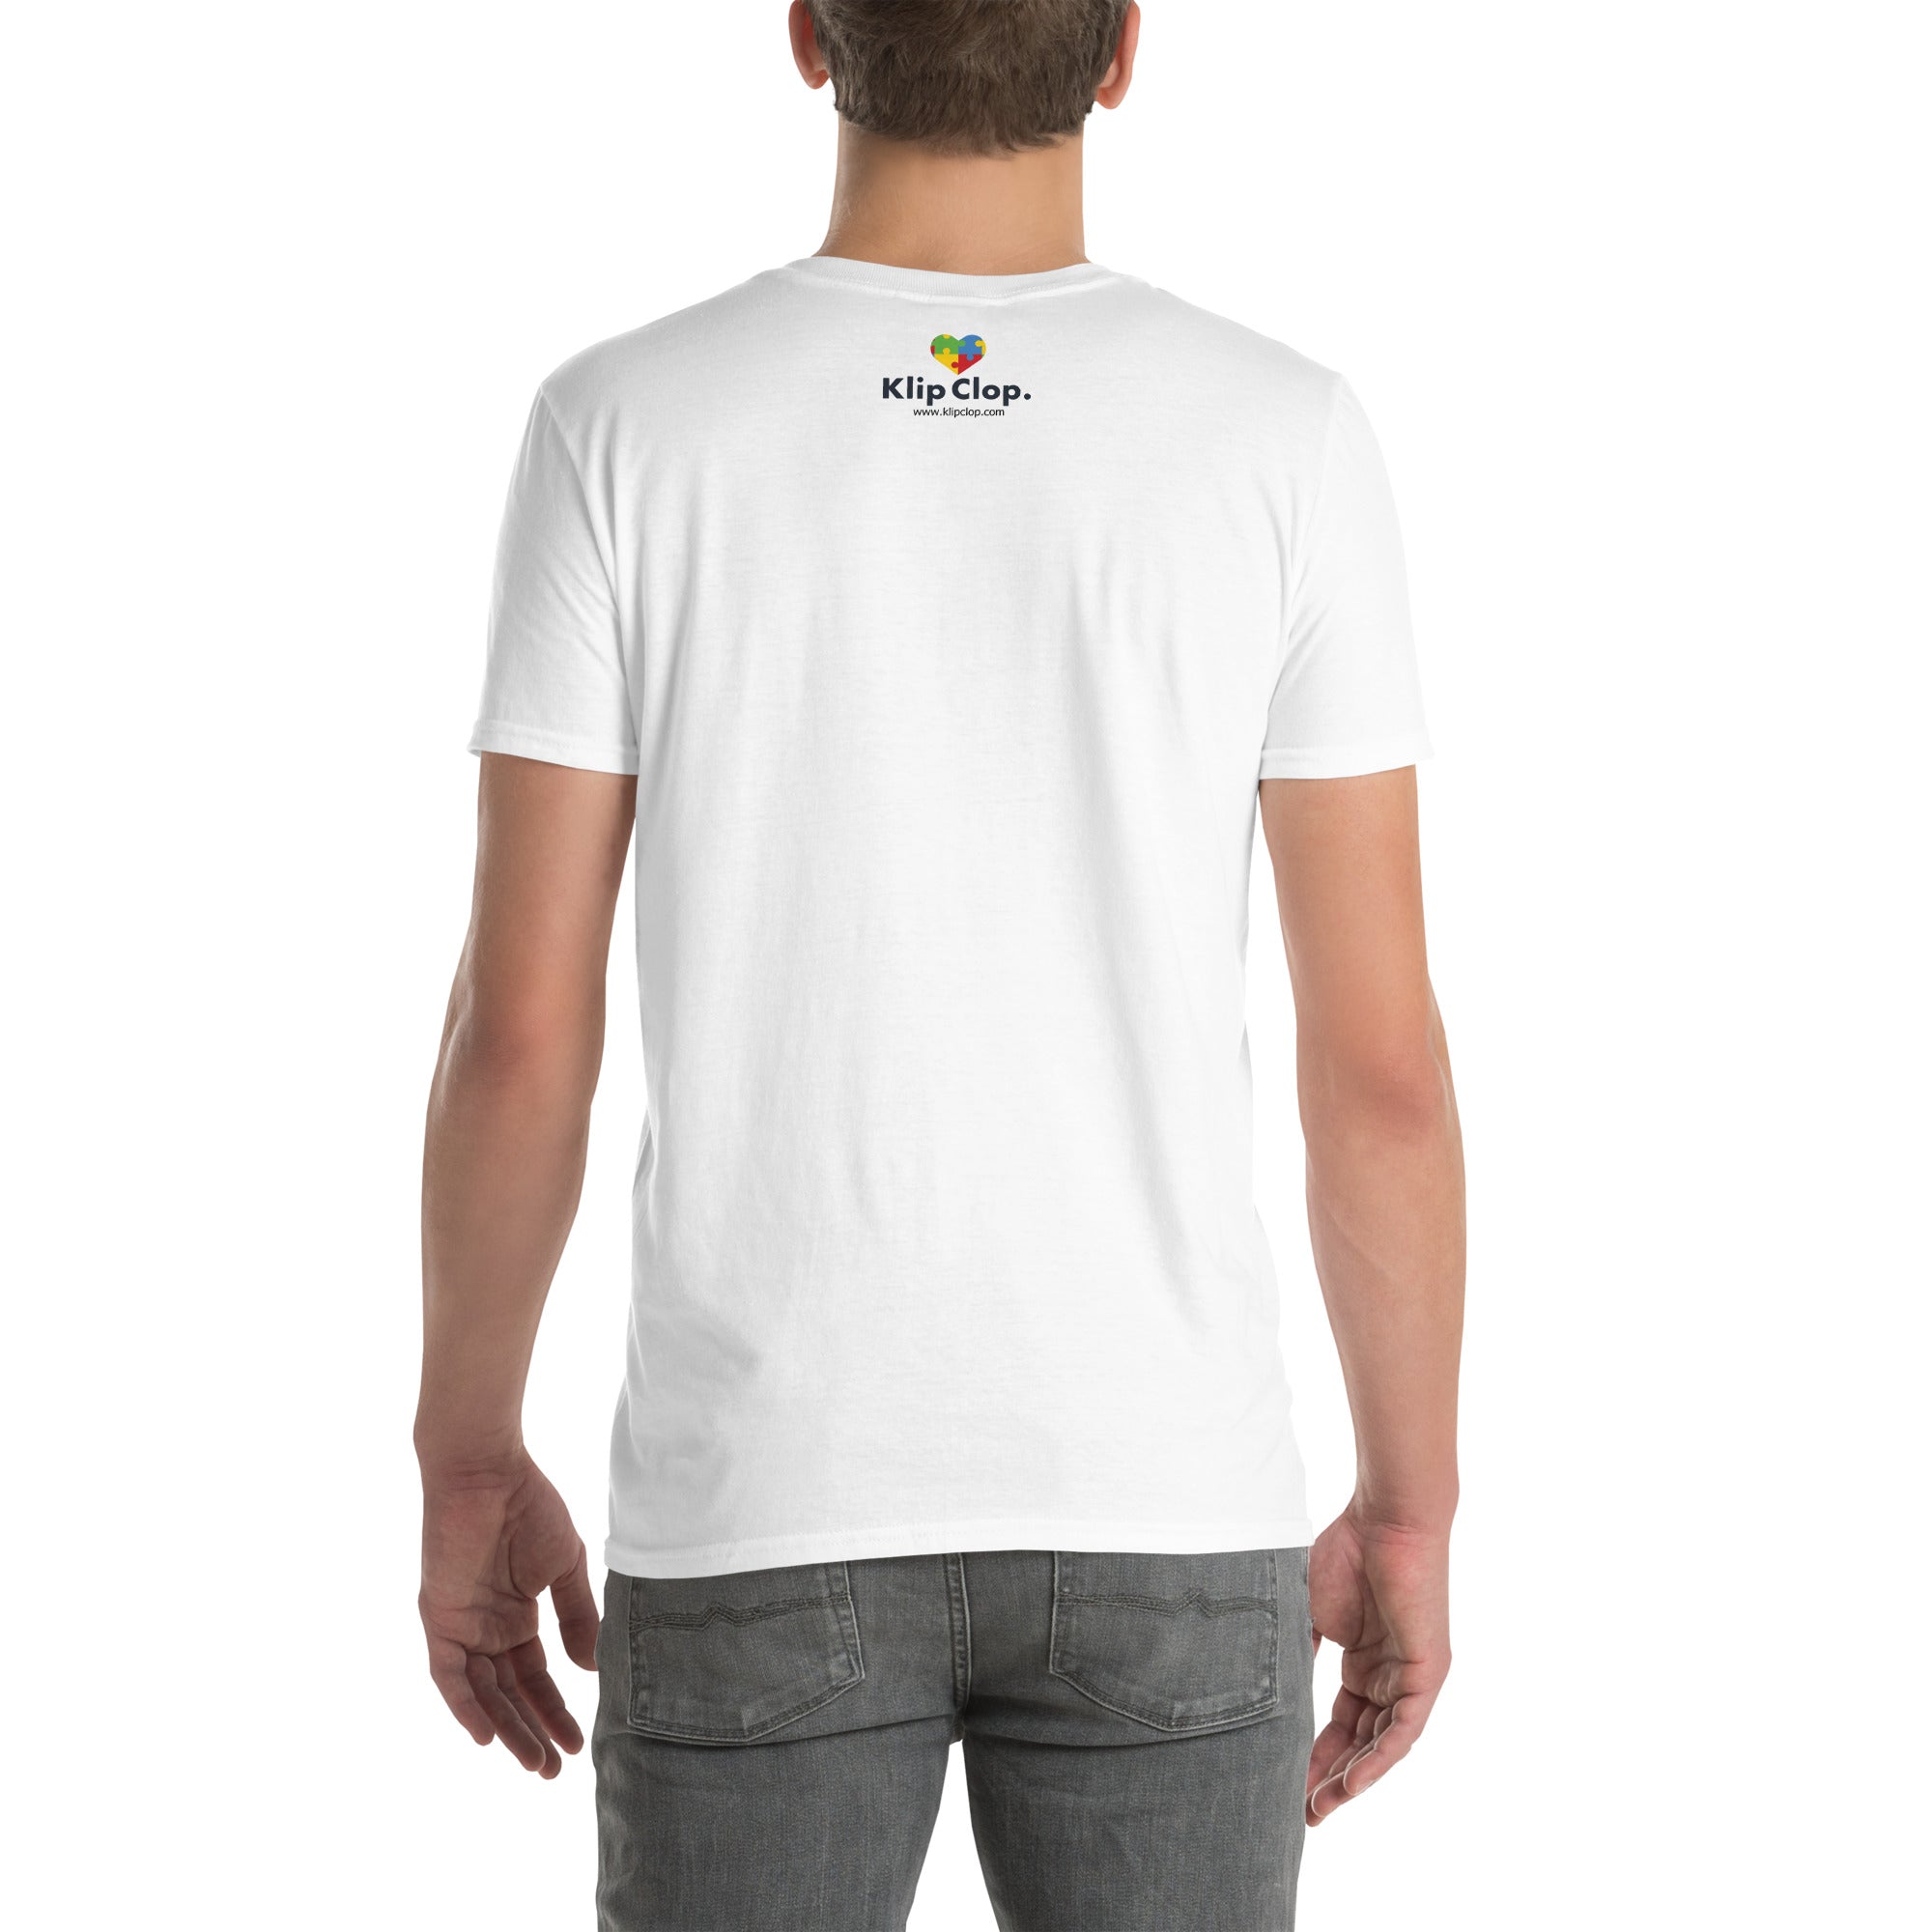 Short-Sleeve Unisex T-Shirt- Think before you judge